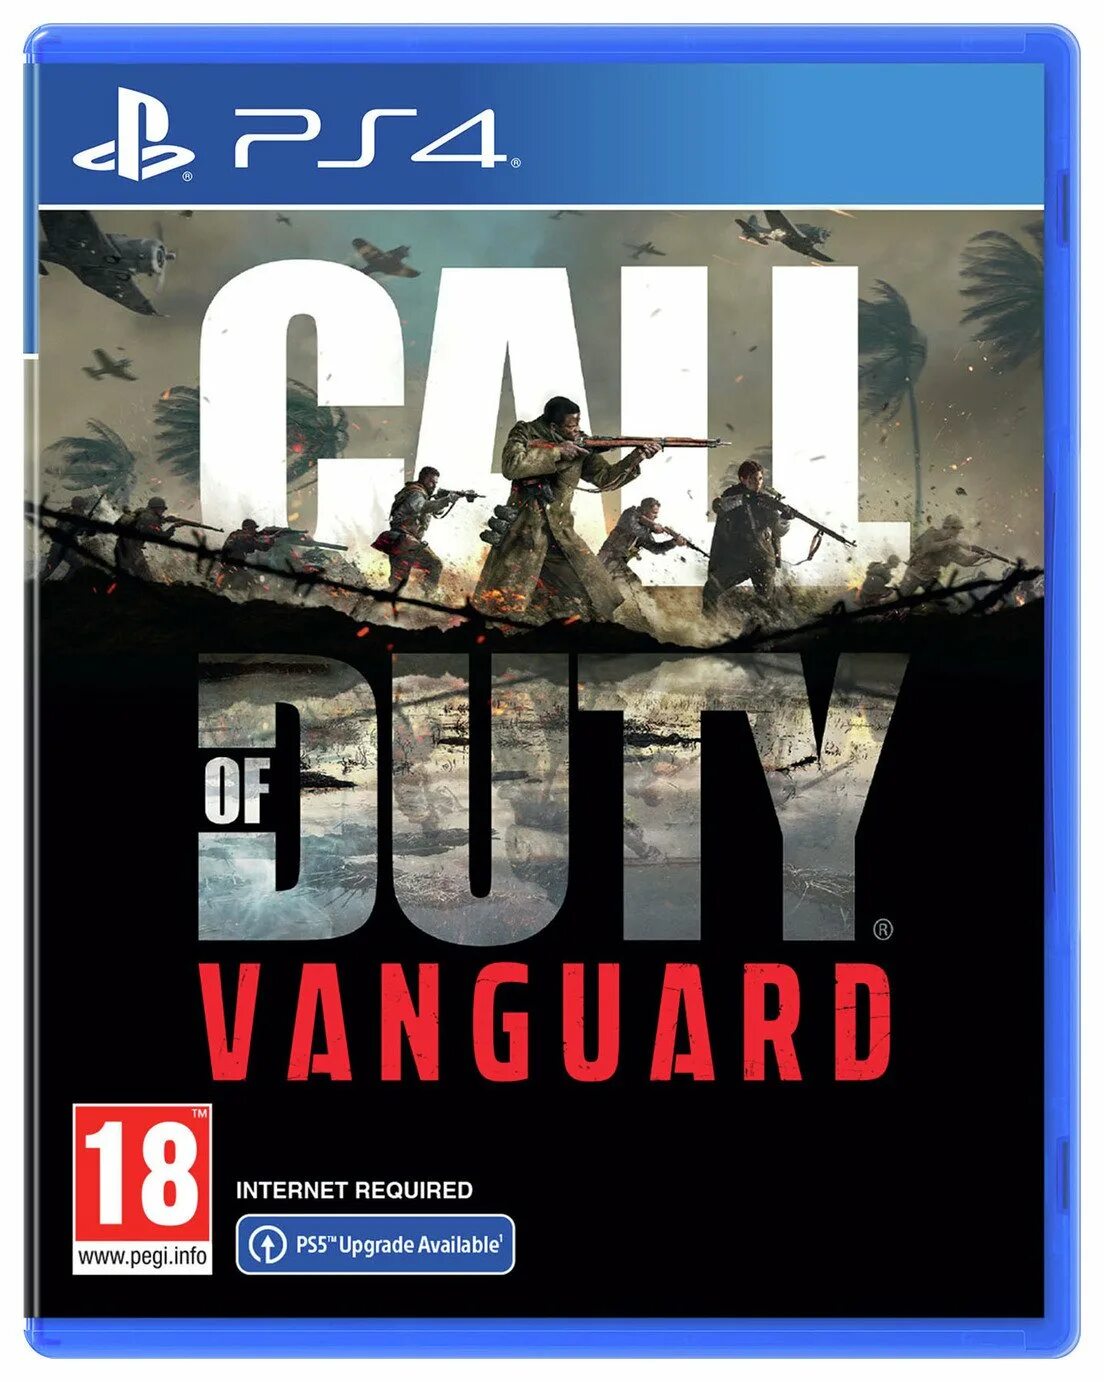 Vanguard ps5. Vanguard ps4. Call of Duty Vanguard ps4. Call of Duty Vanguard ps4 обложка.